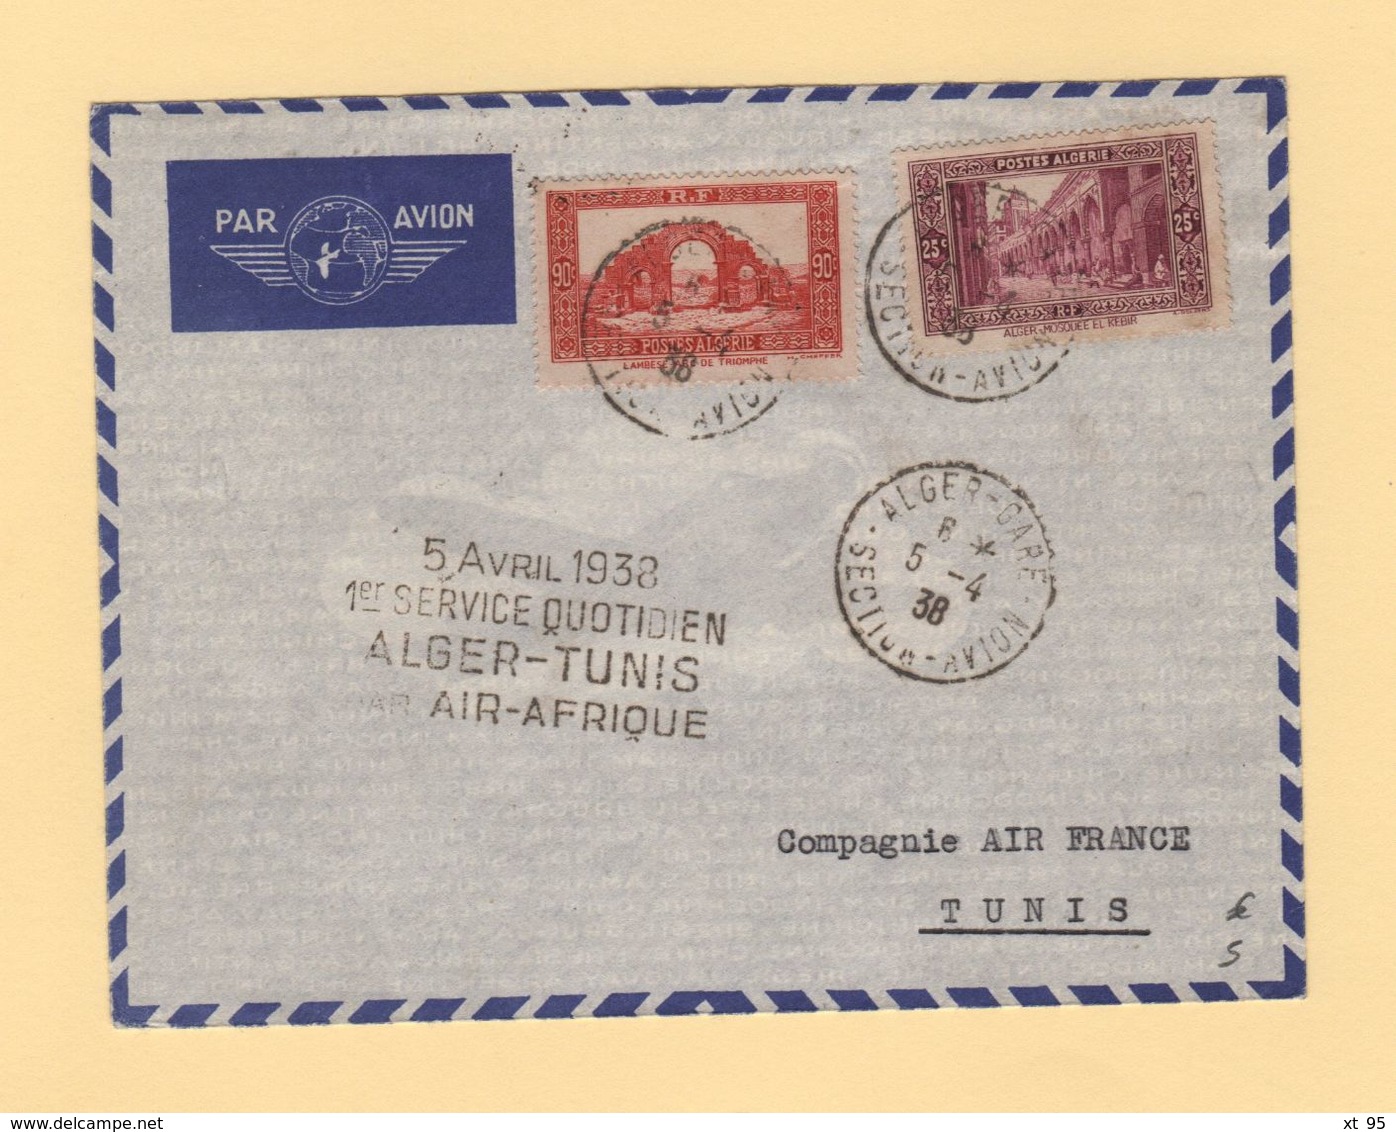 Algerie - 1er Service Quotidien Alger Tunis Par Air Afrique - 5-4-1938 - Luftpost